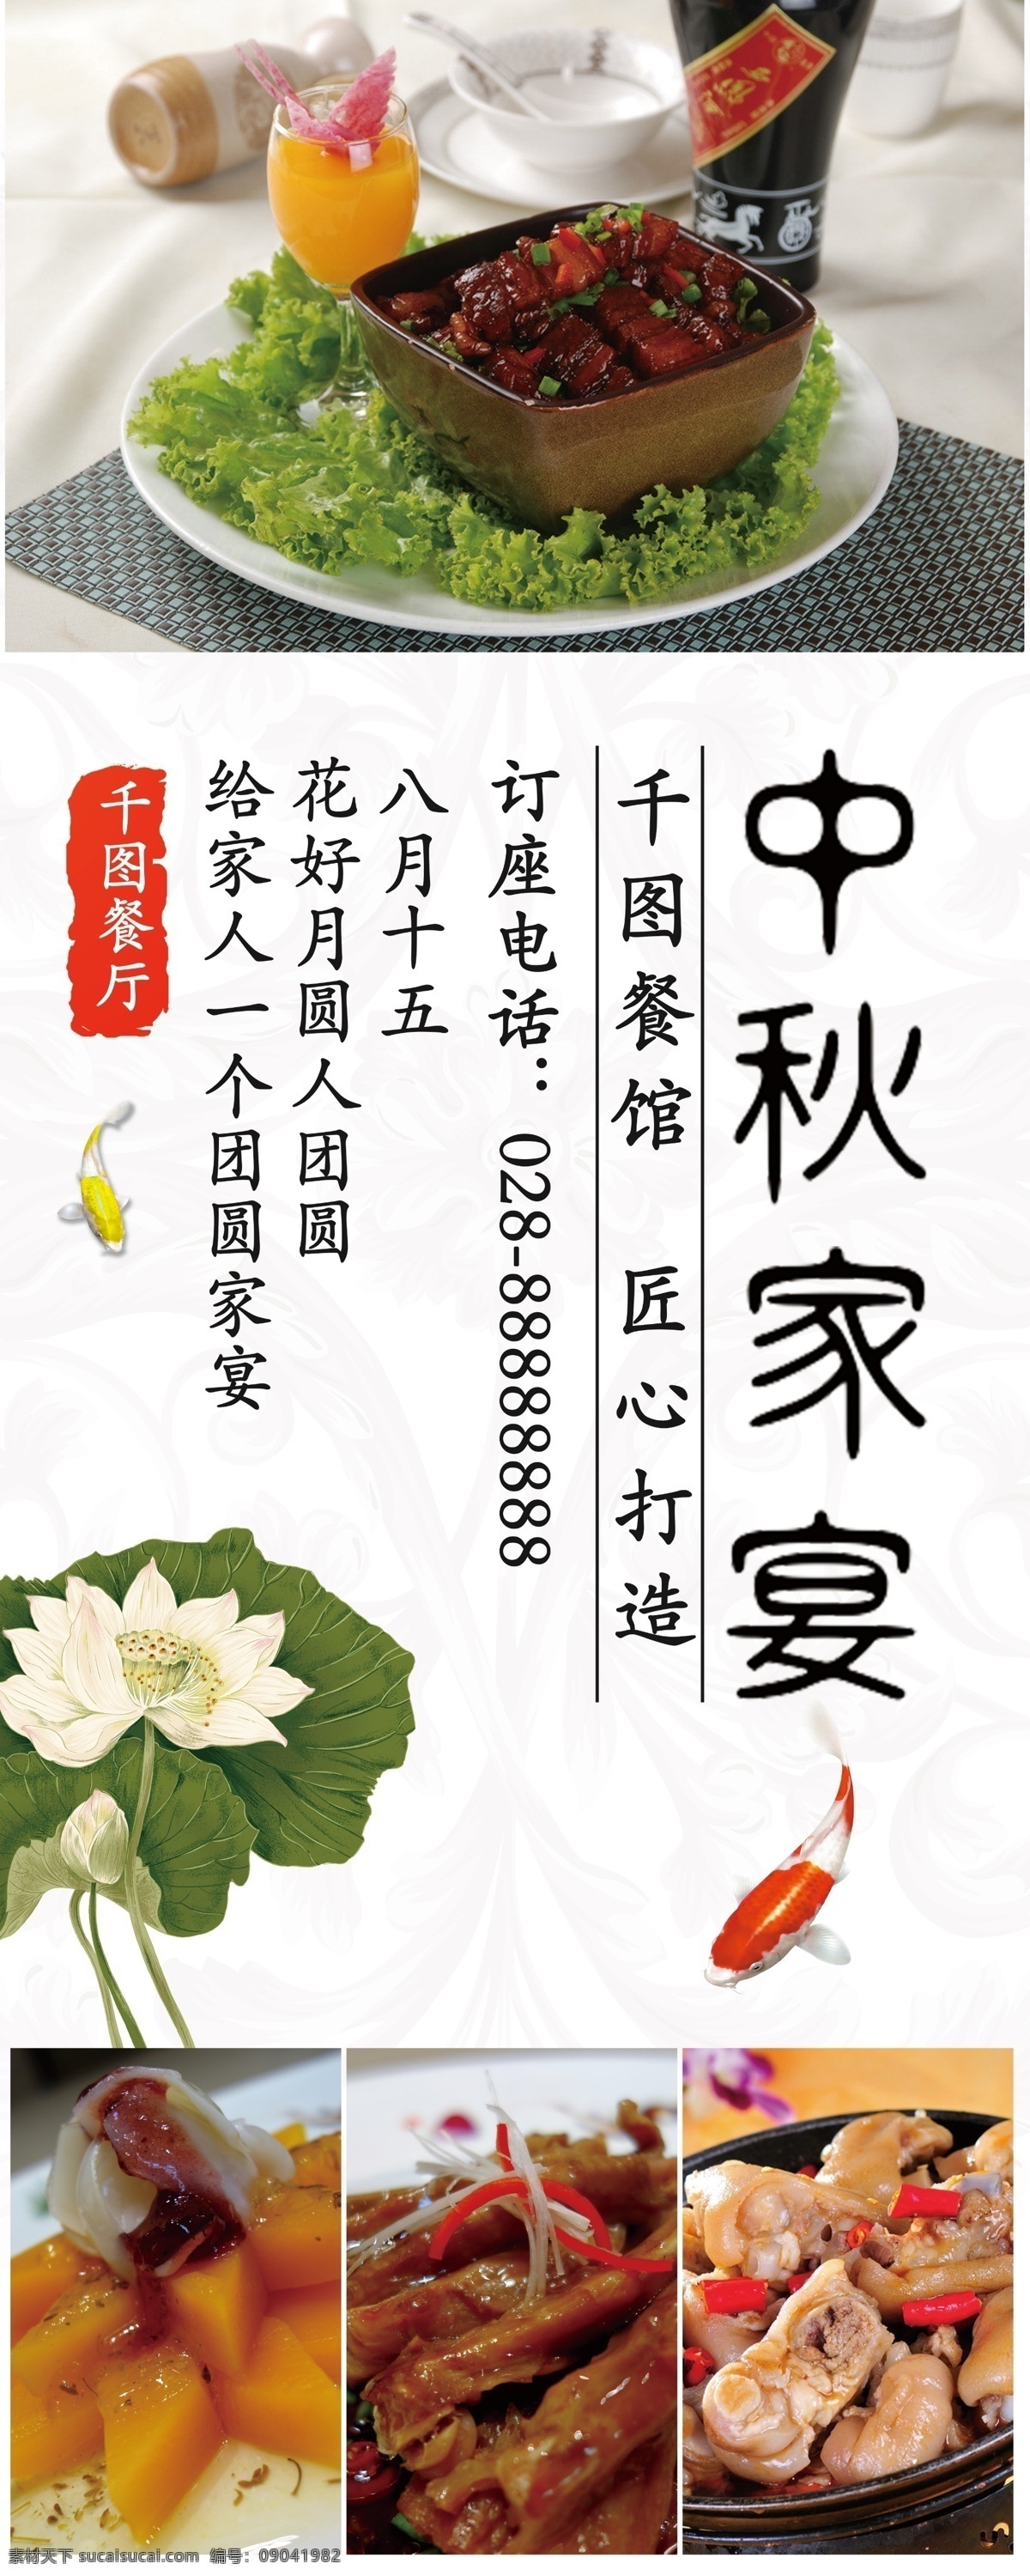 白色 中国 风 水墨 中秋 餐厅 家宴 活动 宣传 展架 中国风 荷花 中国画 锦鲤 鱼 水彩画 美食